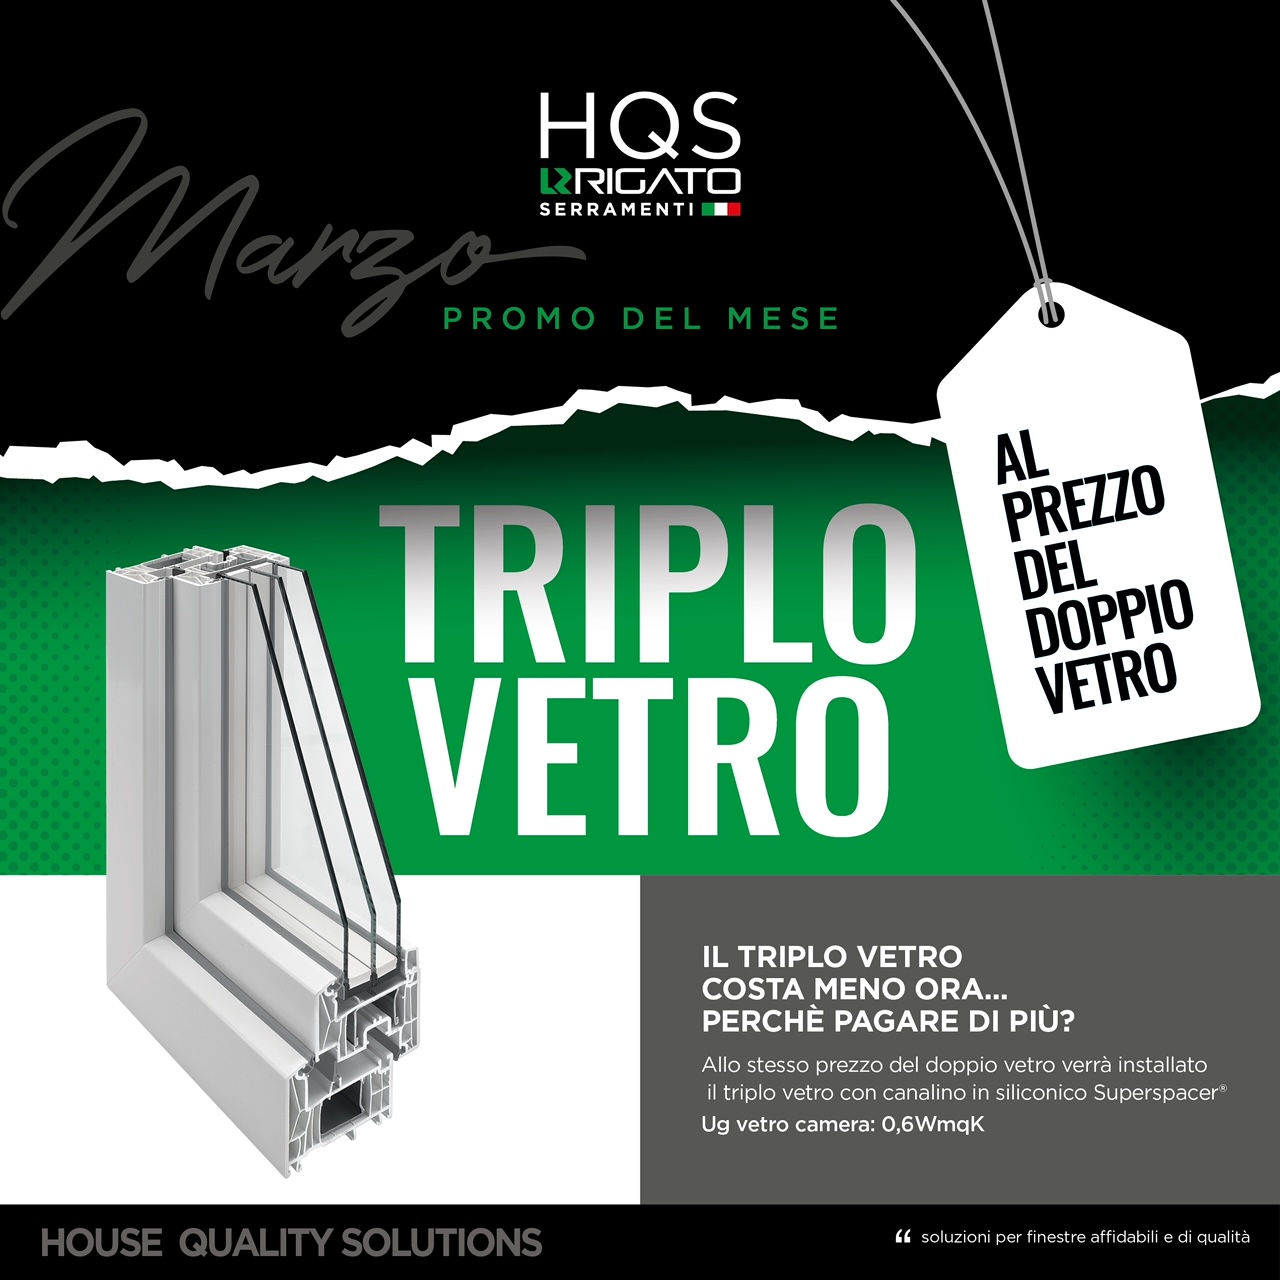 hqs_rigato_house_quality_solutions_one_fonte_treviso_serramenti_alluminio_serramenti_pvc_infissi_porte_interne